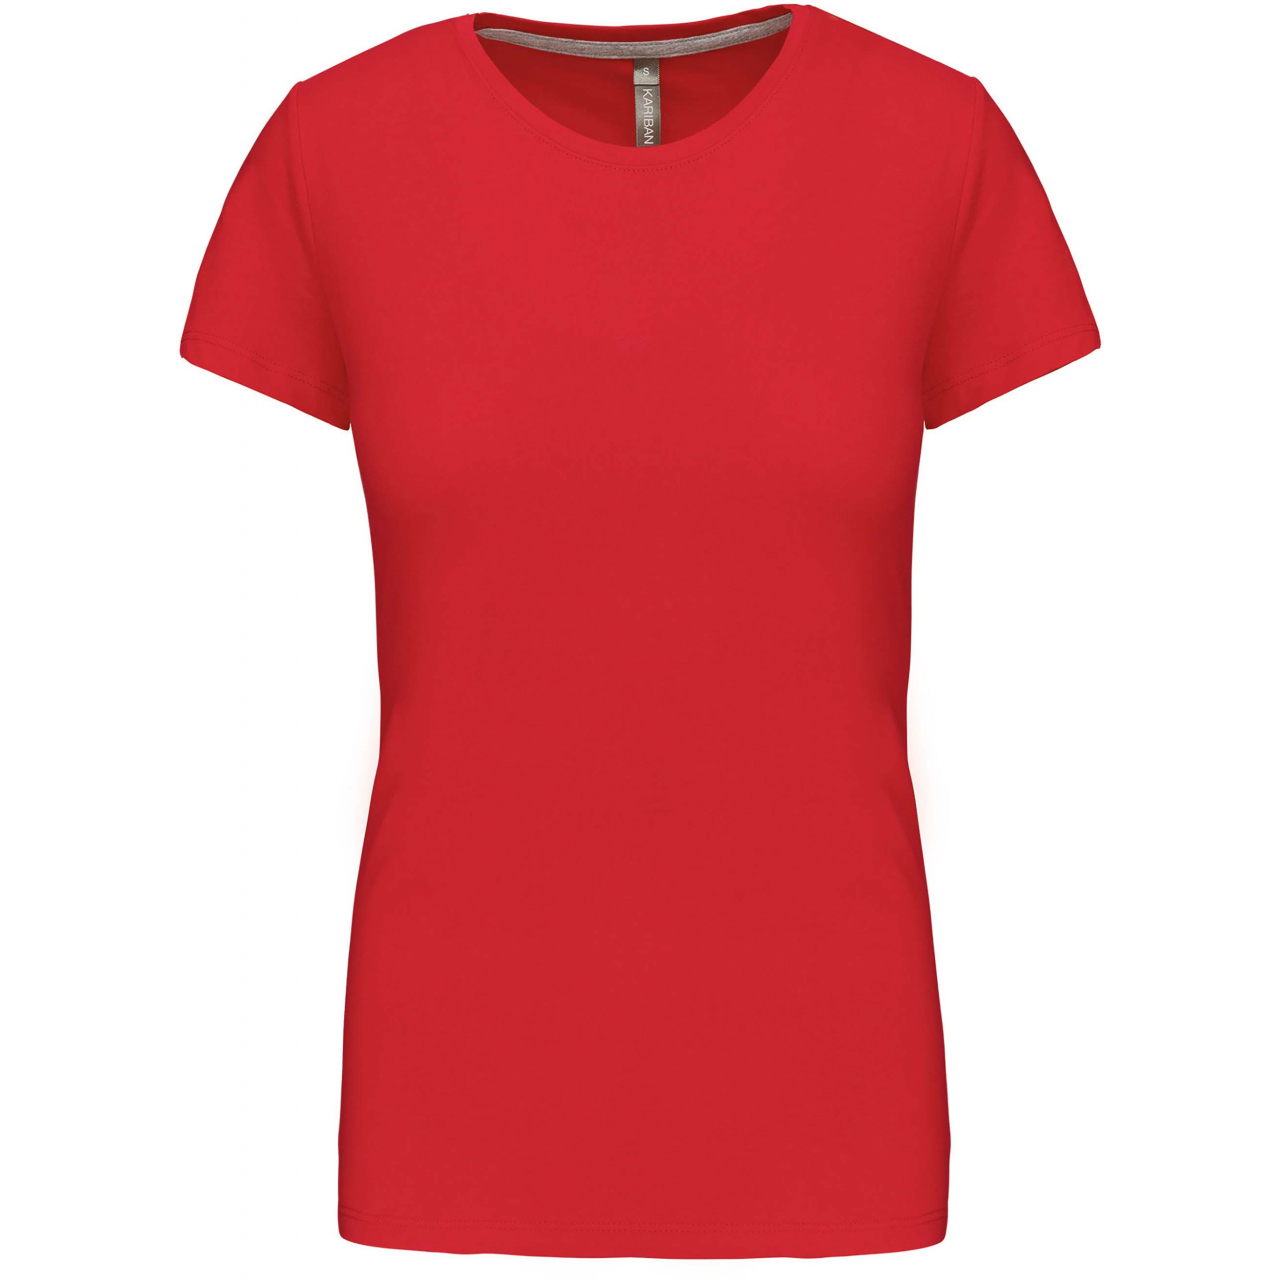 Dámské tričko Kariban s krátkým rukávem - červené, XL